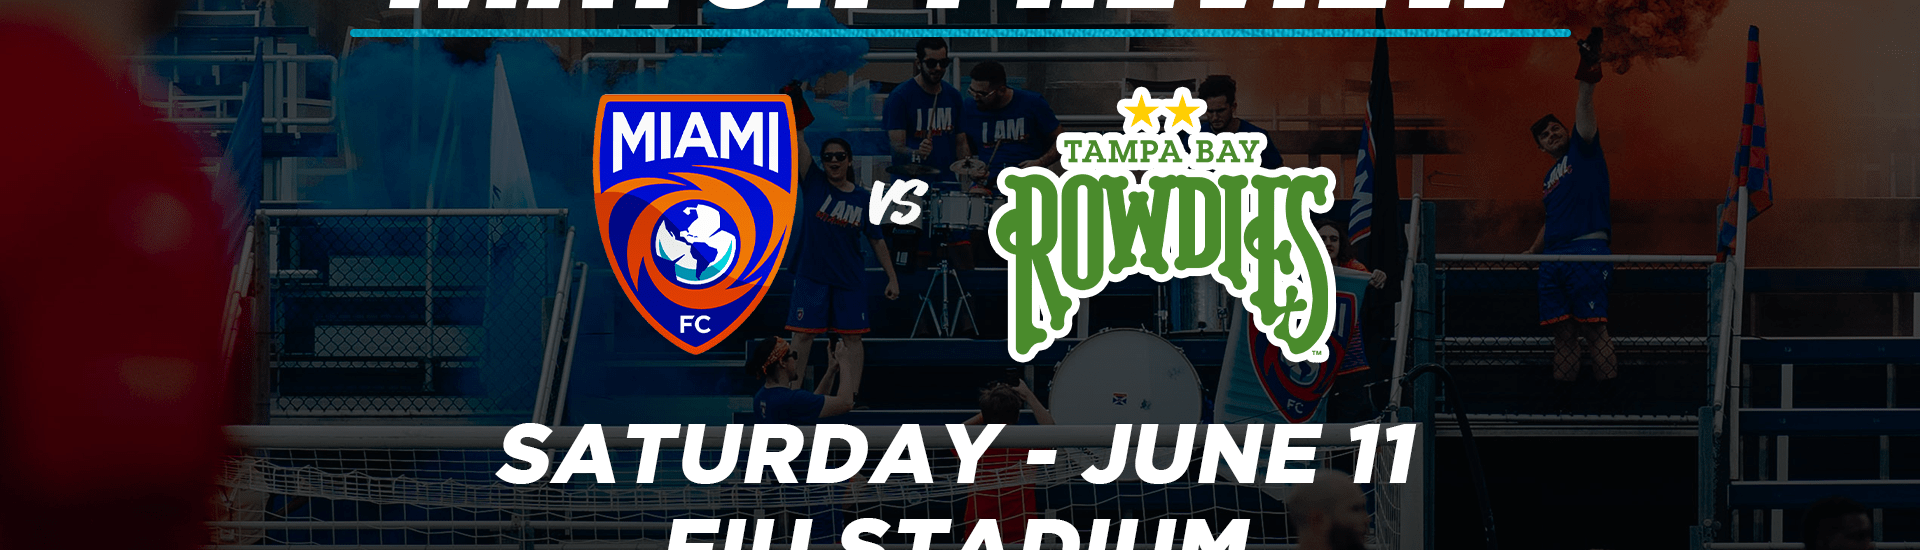 Miami FC vs. Tampa Bay Rowdies